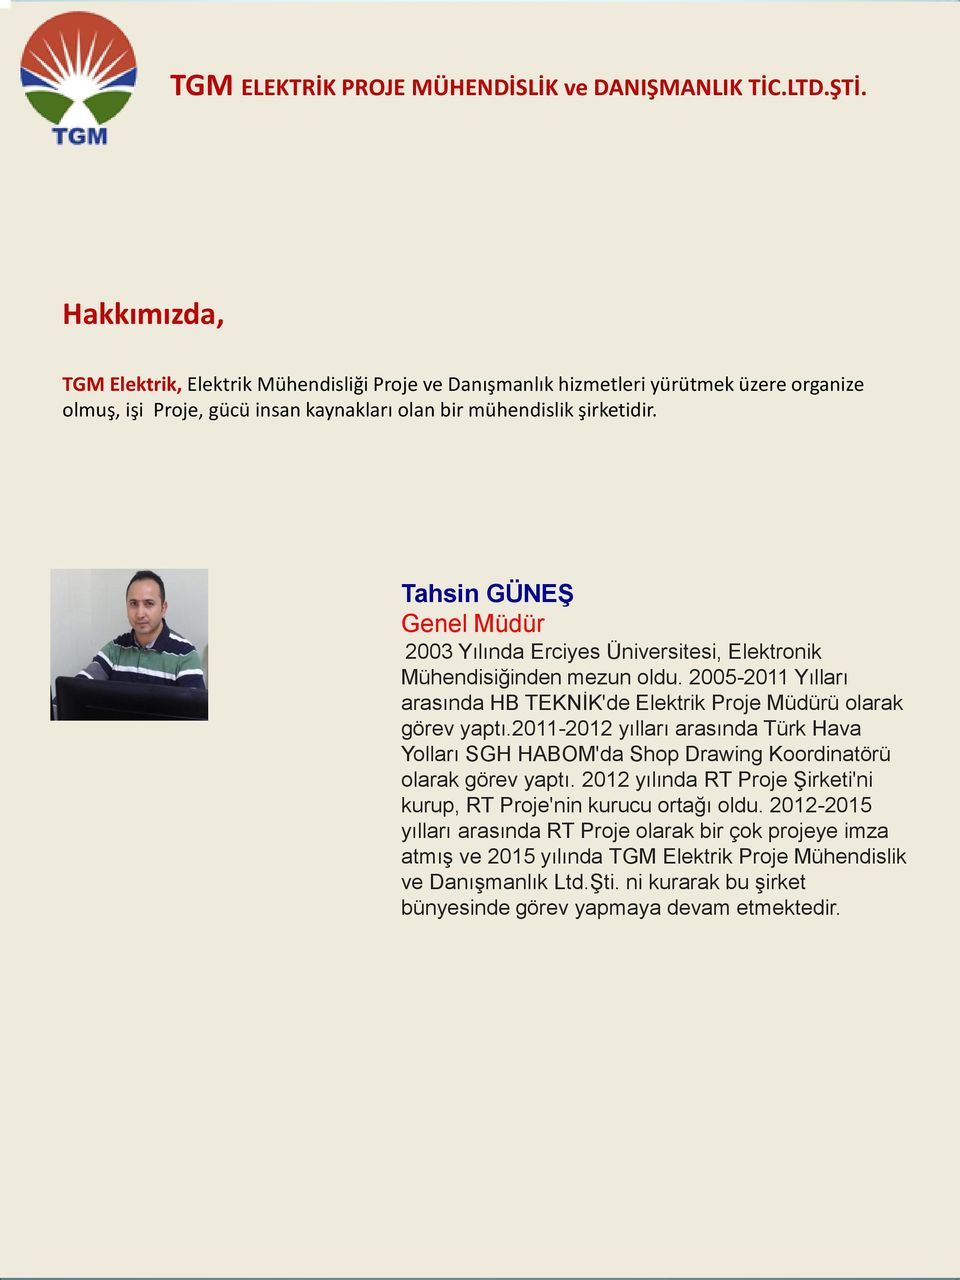 2011-2012 yılları arasında Türk Hava Yolları SGH HABOM'da Shop Drawing Koordinatörü olarak görev yaptı. 2012 yılında RT Proje Şirketi'ni kurup, RT Proje'nin kurucu ortağı oldu.